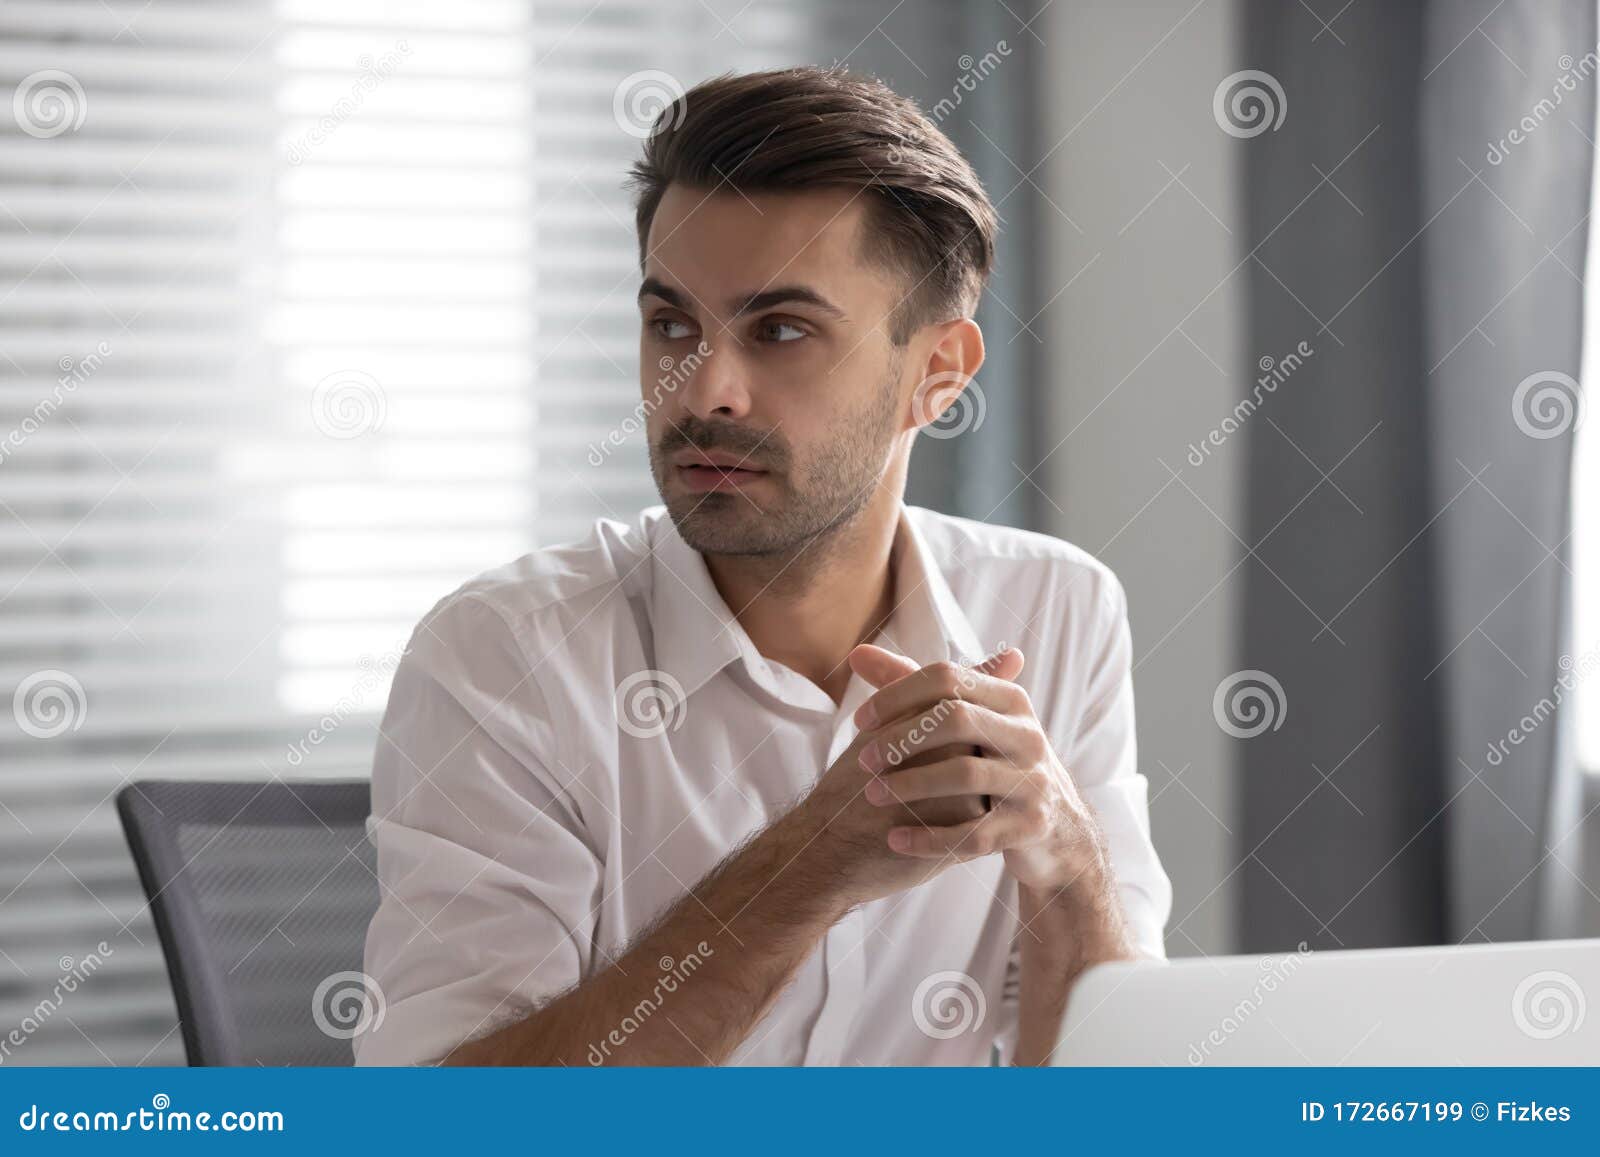 pensive male employee look to side listen to coworker talk